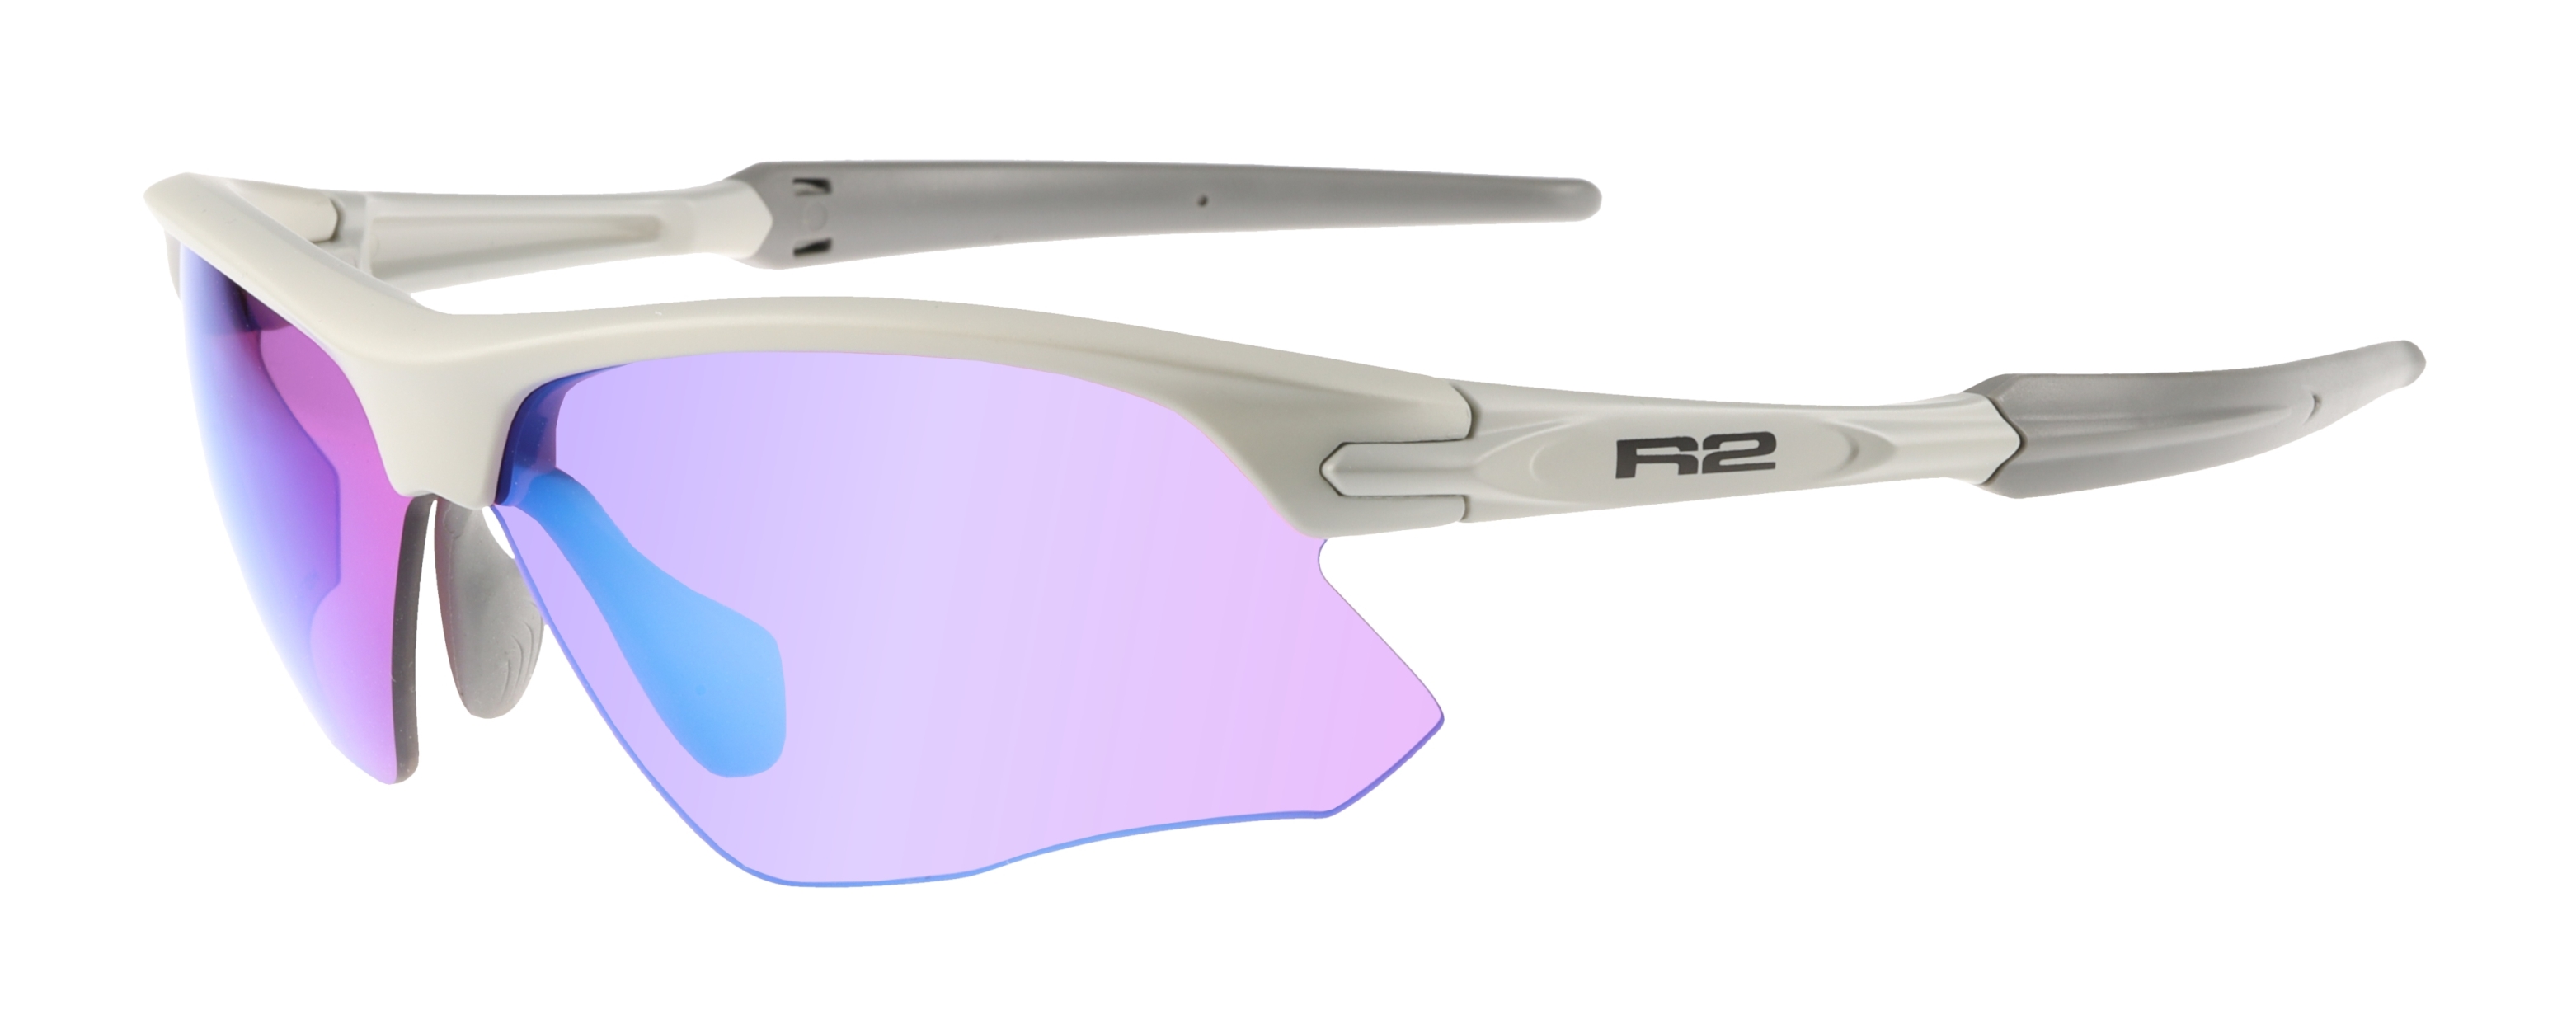 HD sport sunglasses R2 KICK AT109D XS